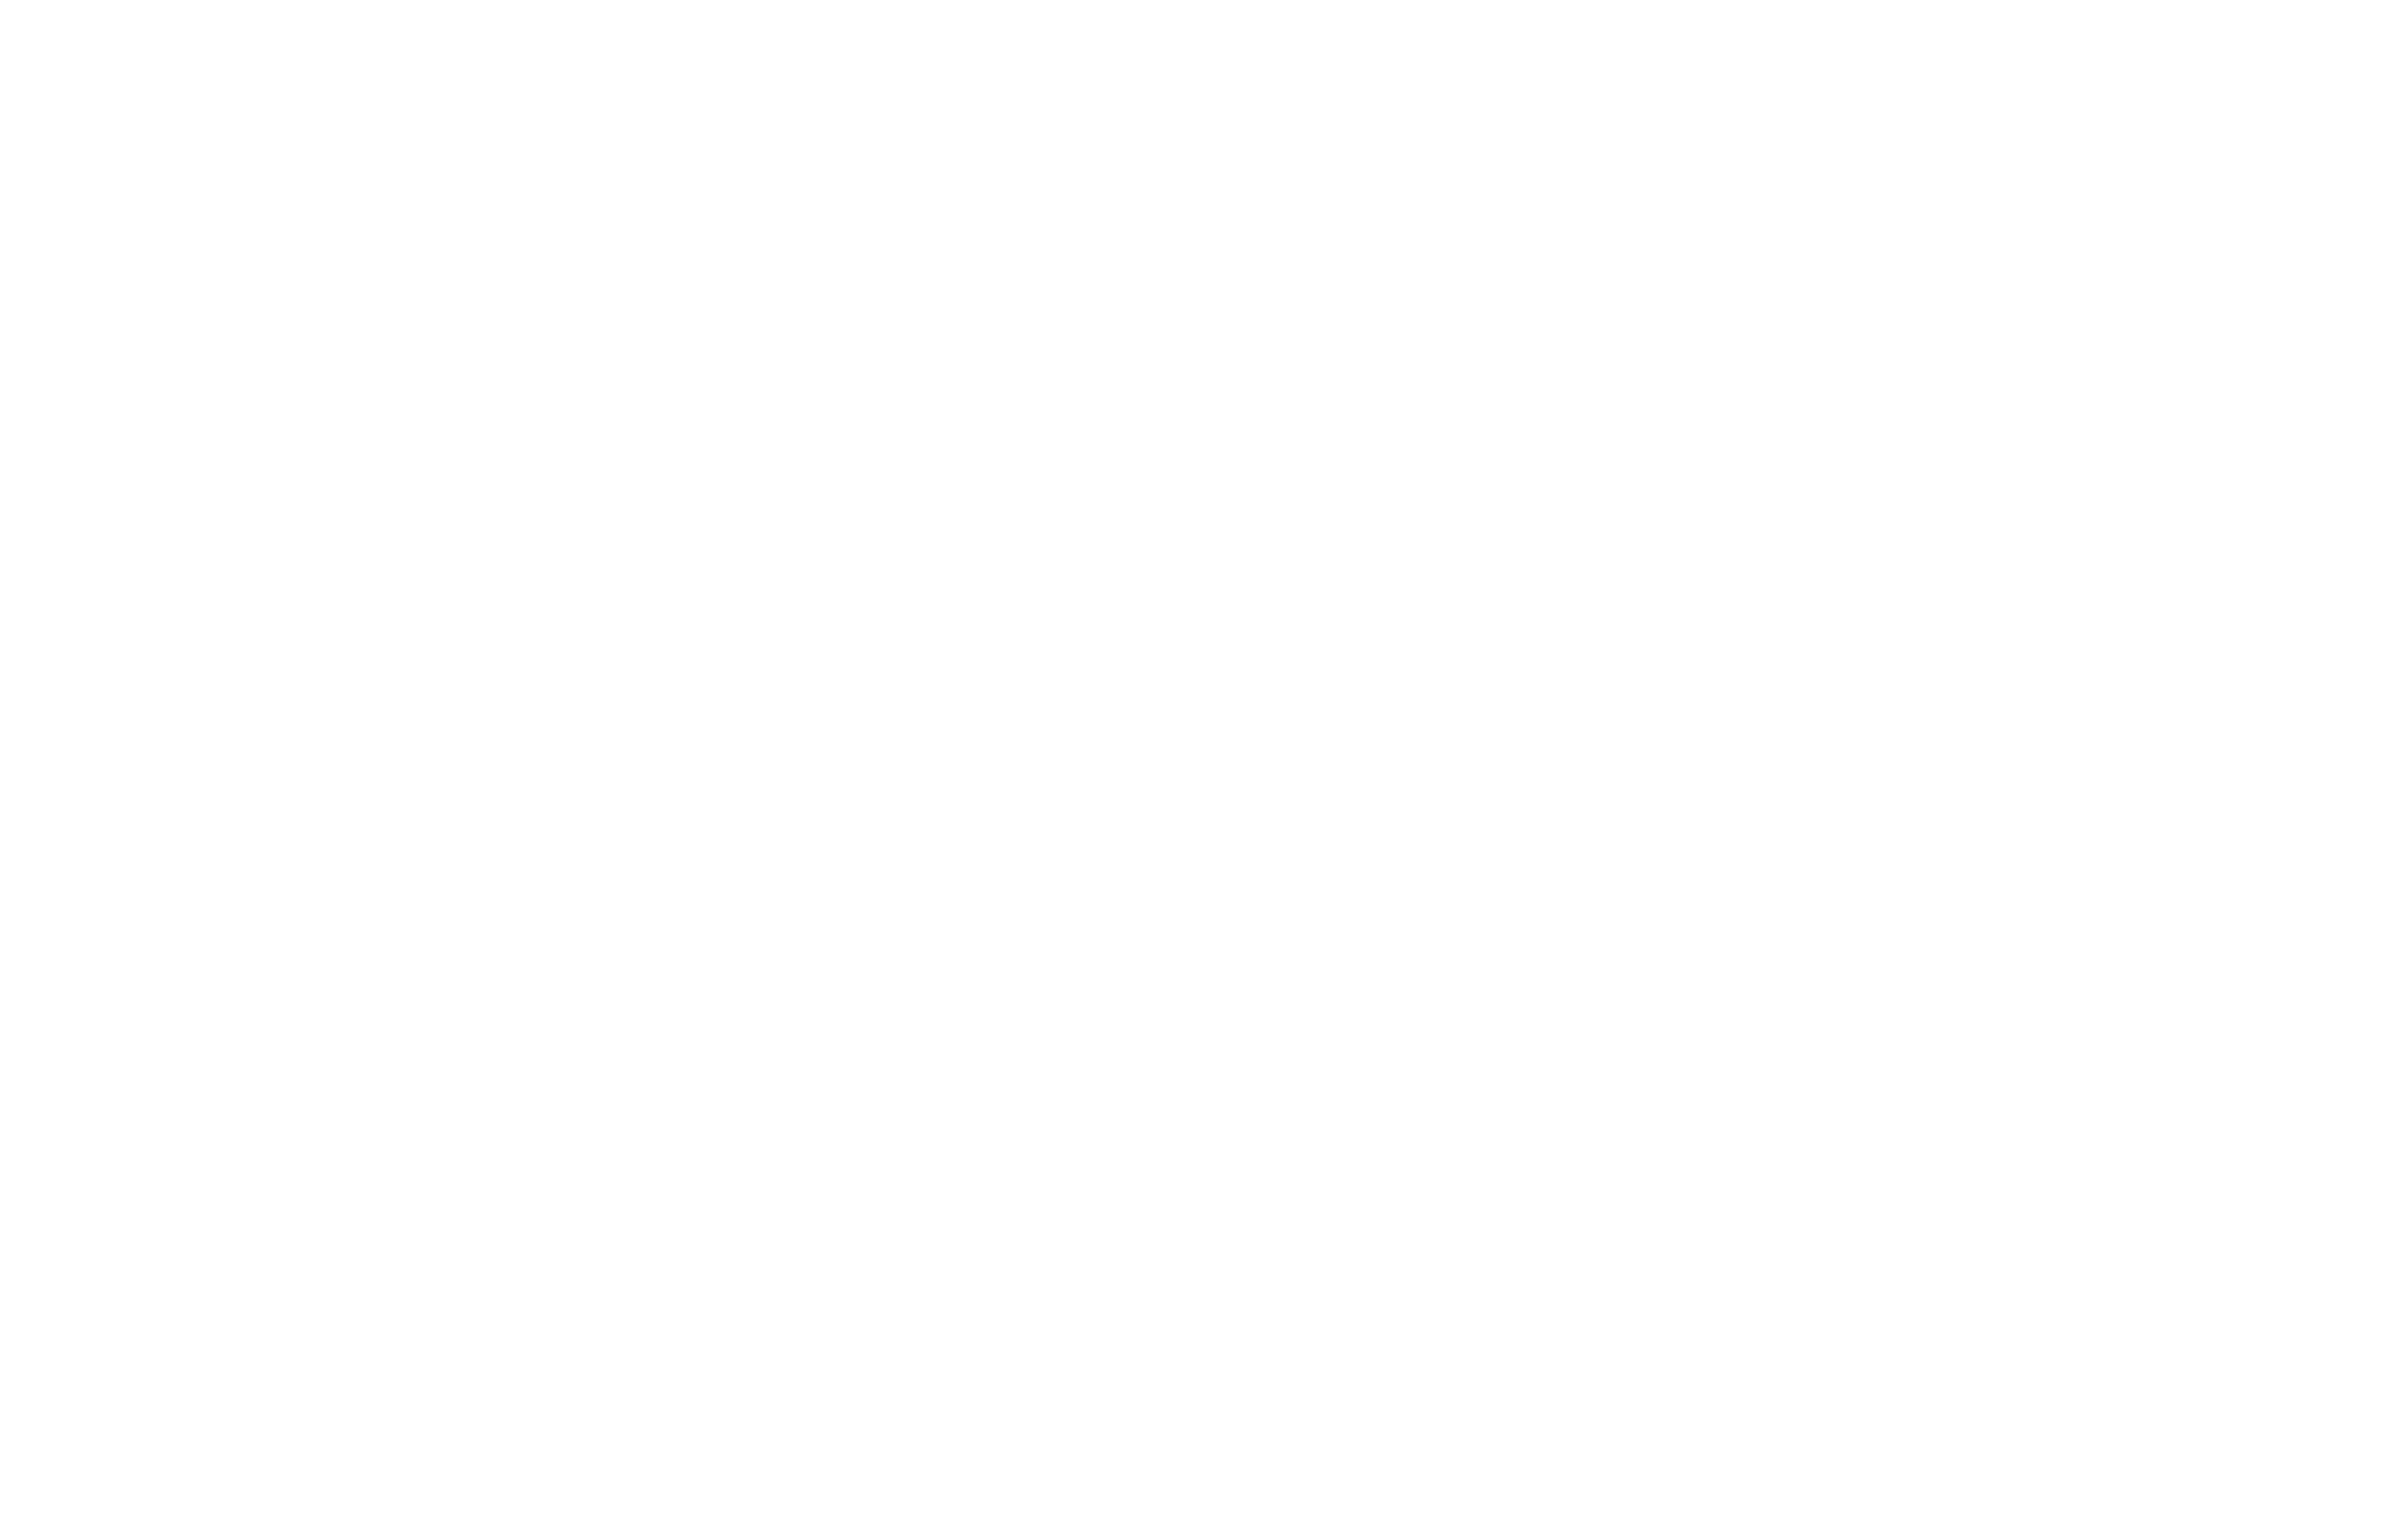 APEX Defense